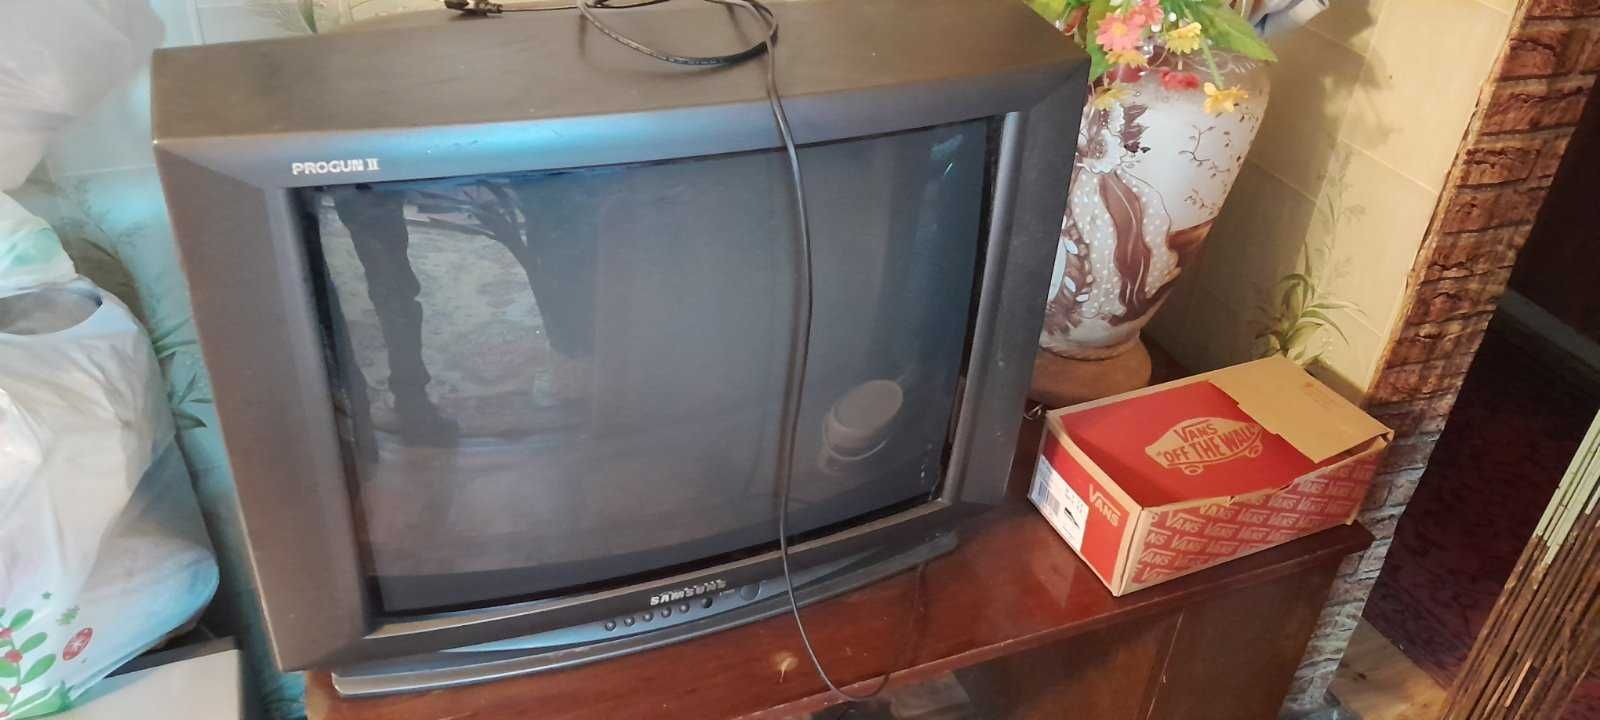 Продам два телевизора По 300 грн  за один. Все в рабочем состоянии .